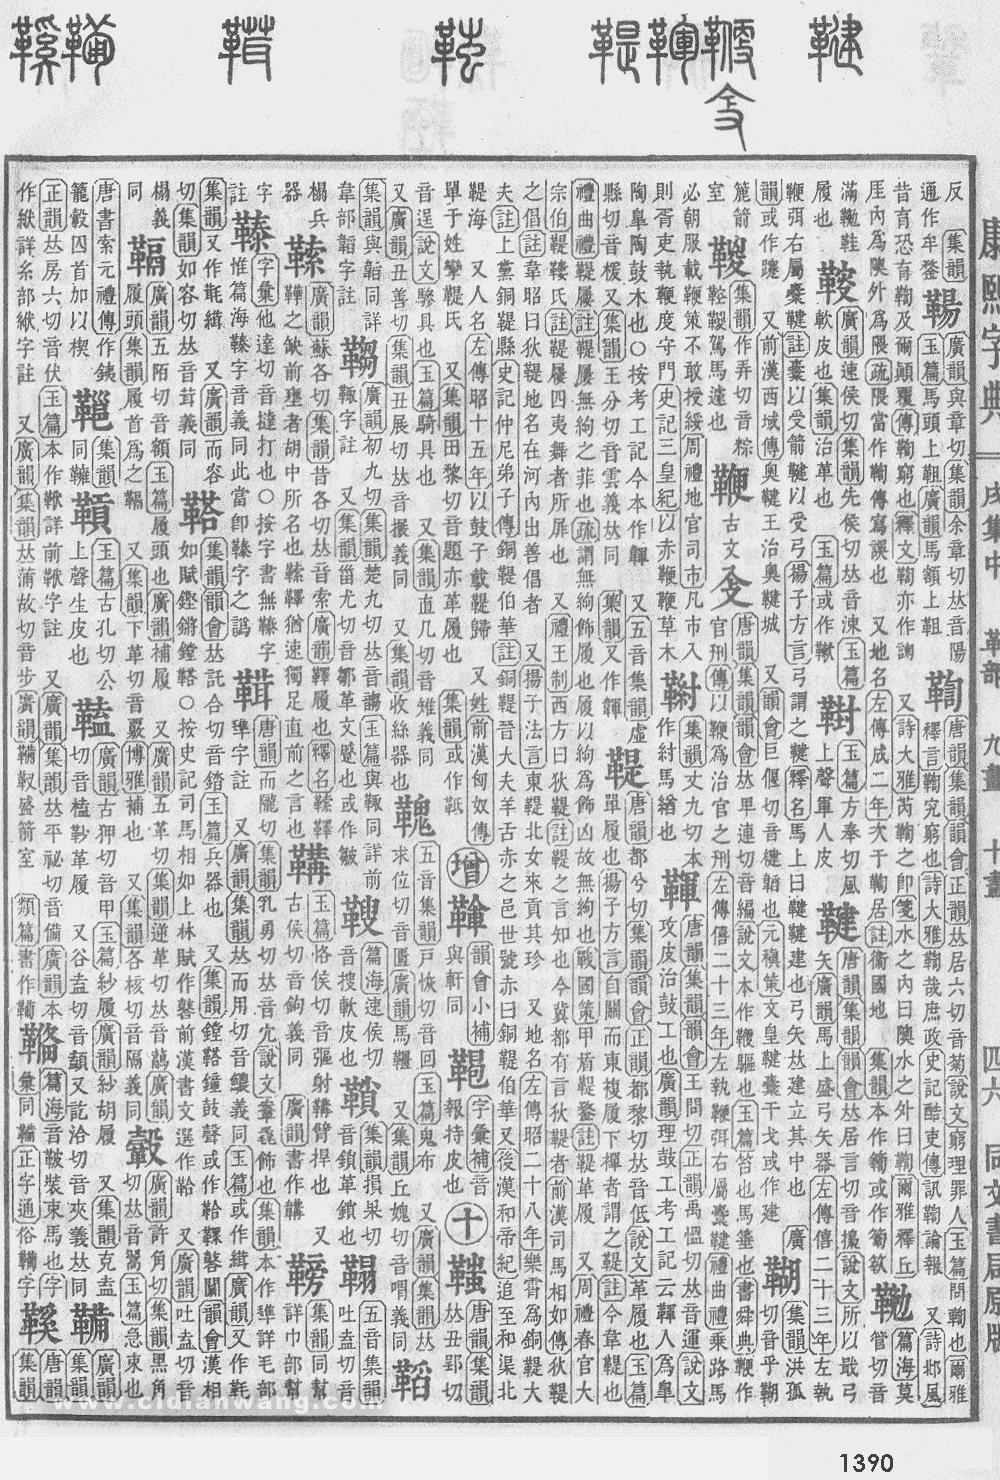 康熙字典掃描版第1390頁